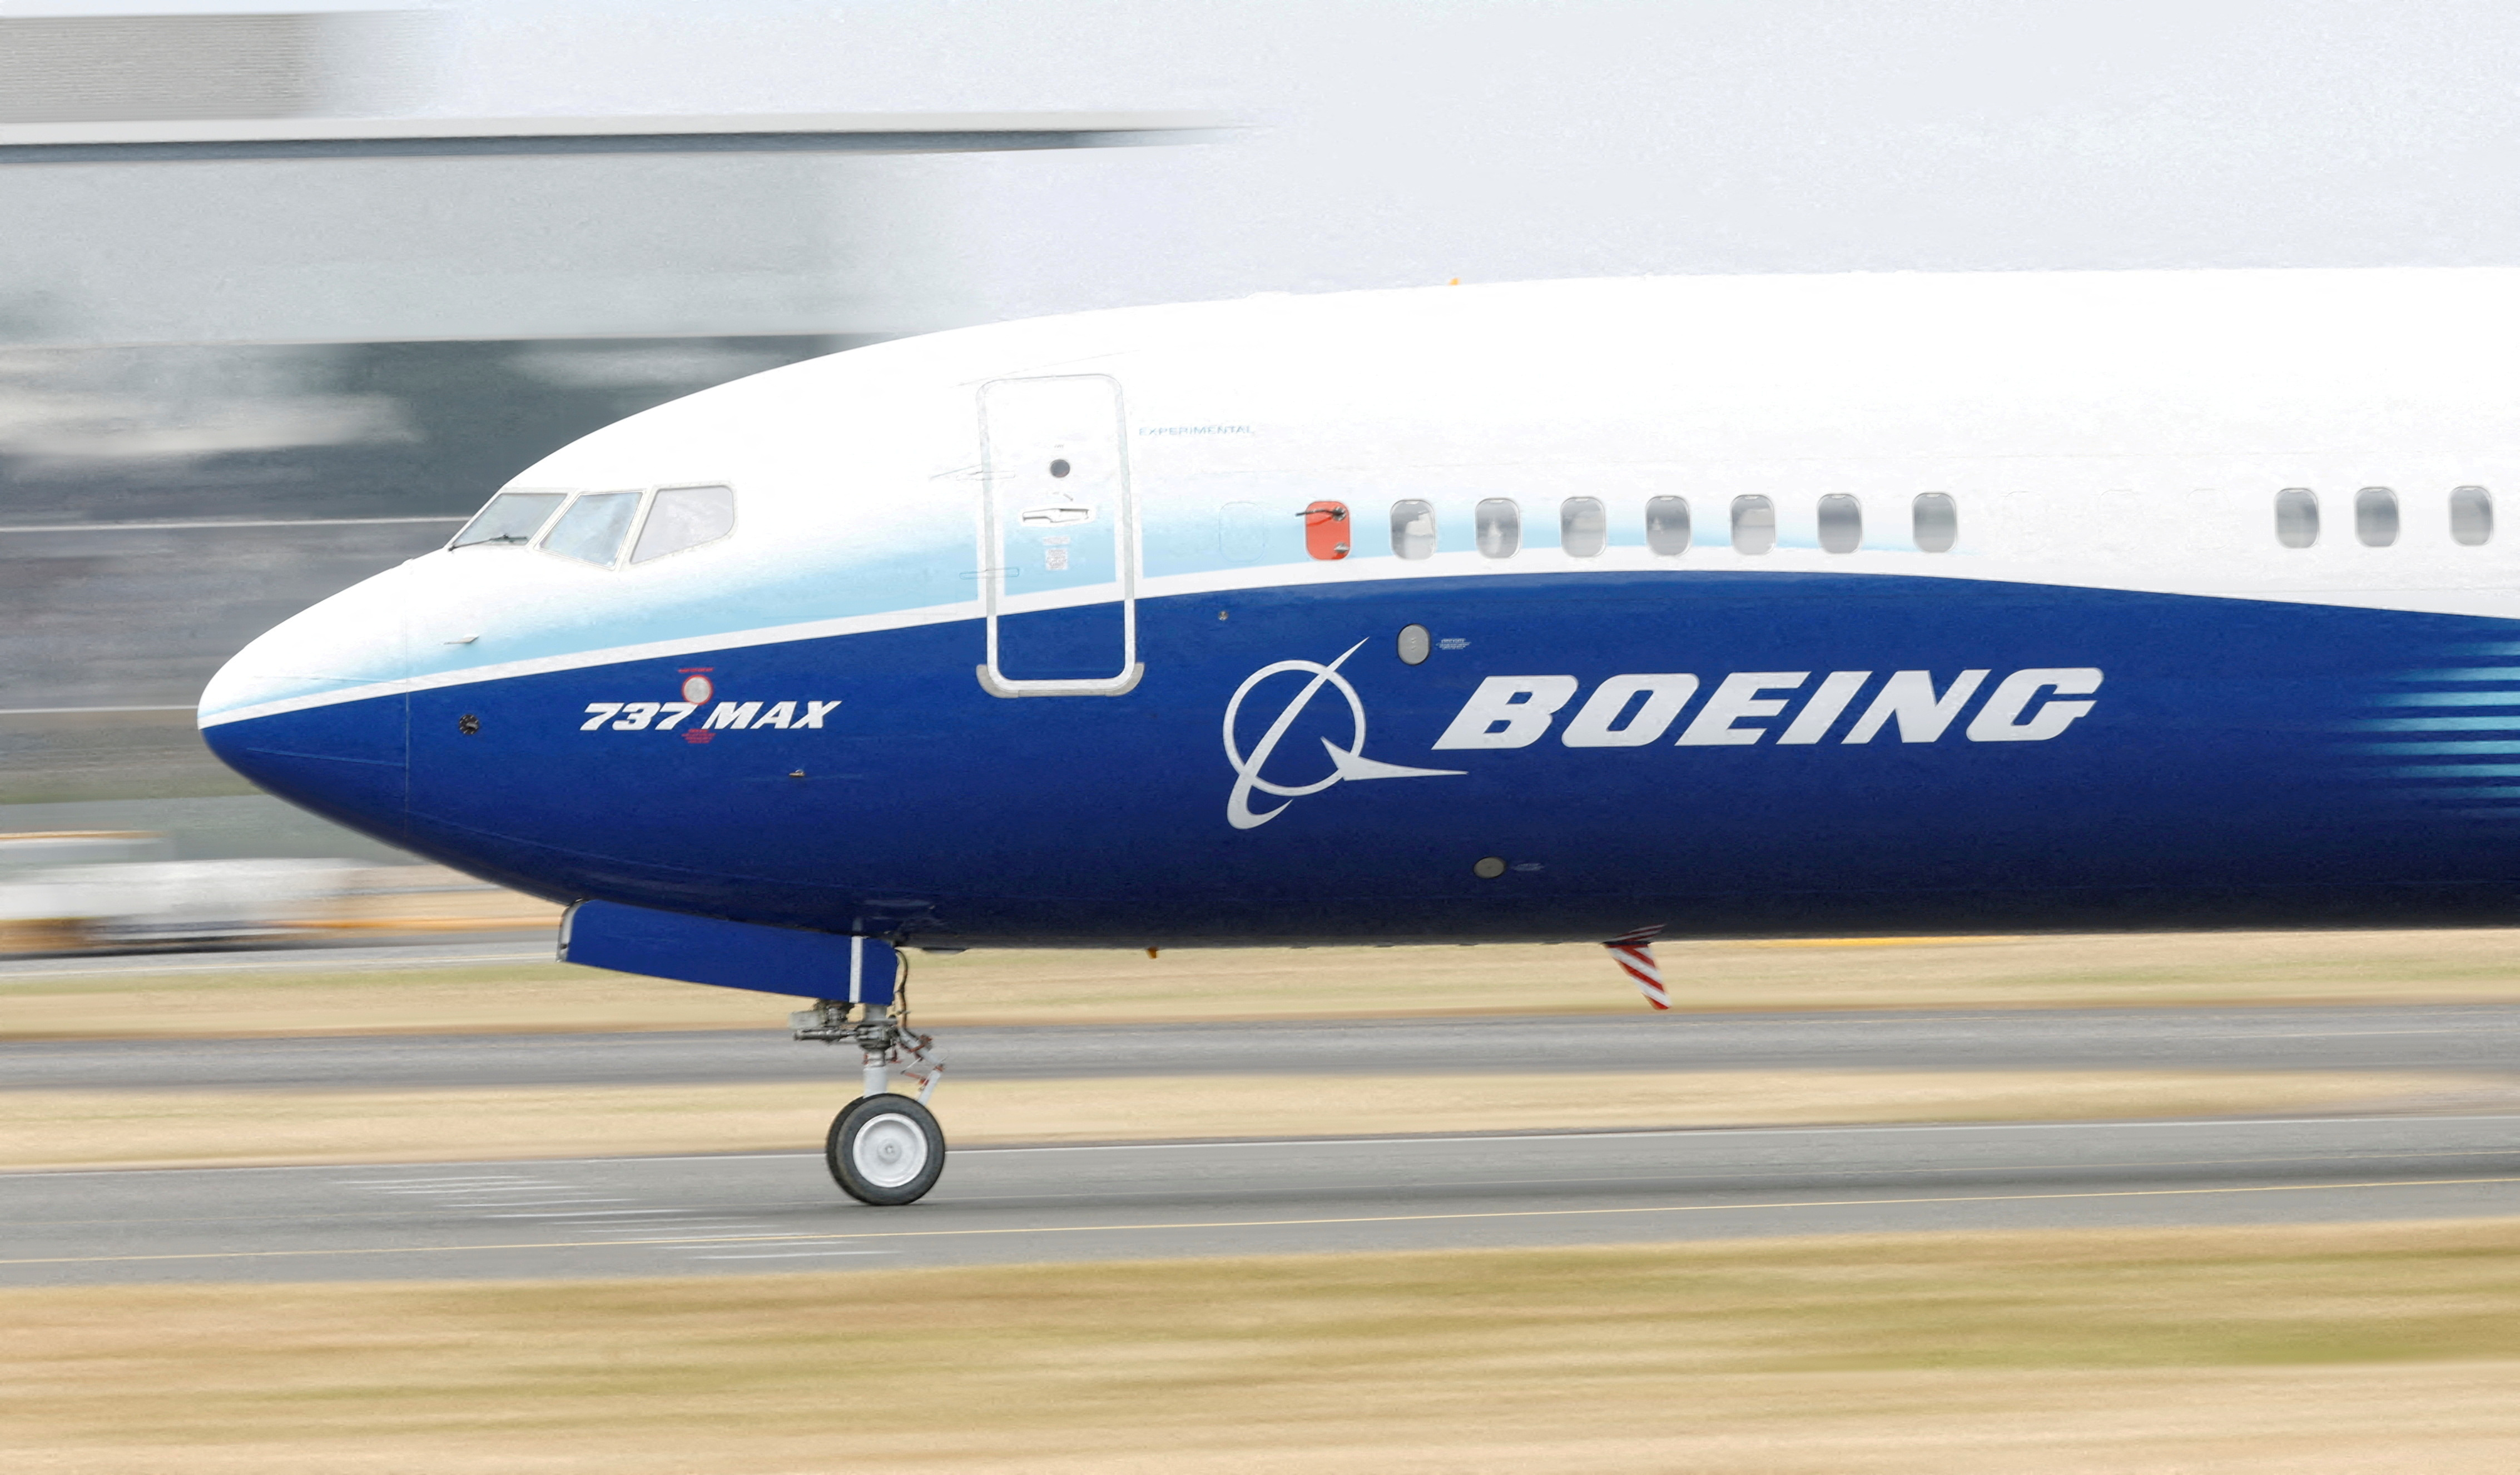 Sécurité aérienne : un sous-traitant de Boeing visé par une enquête aux Etats-Unis